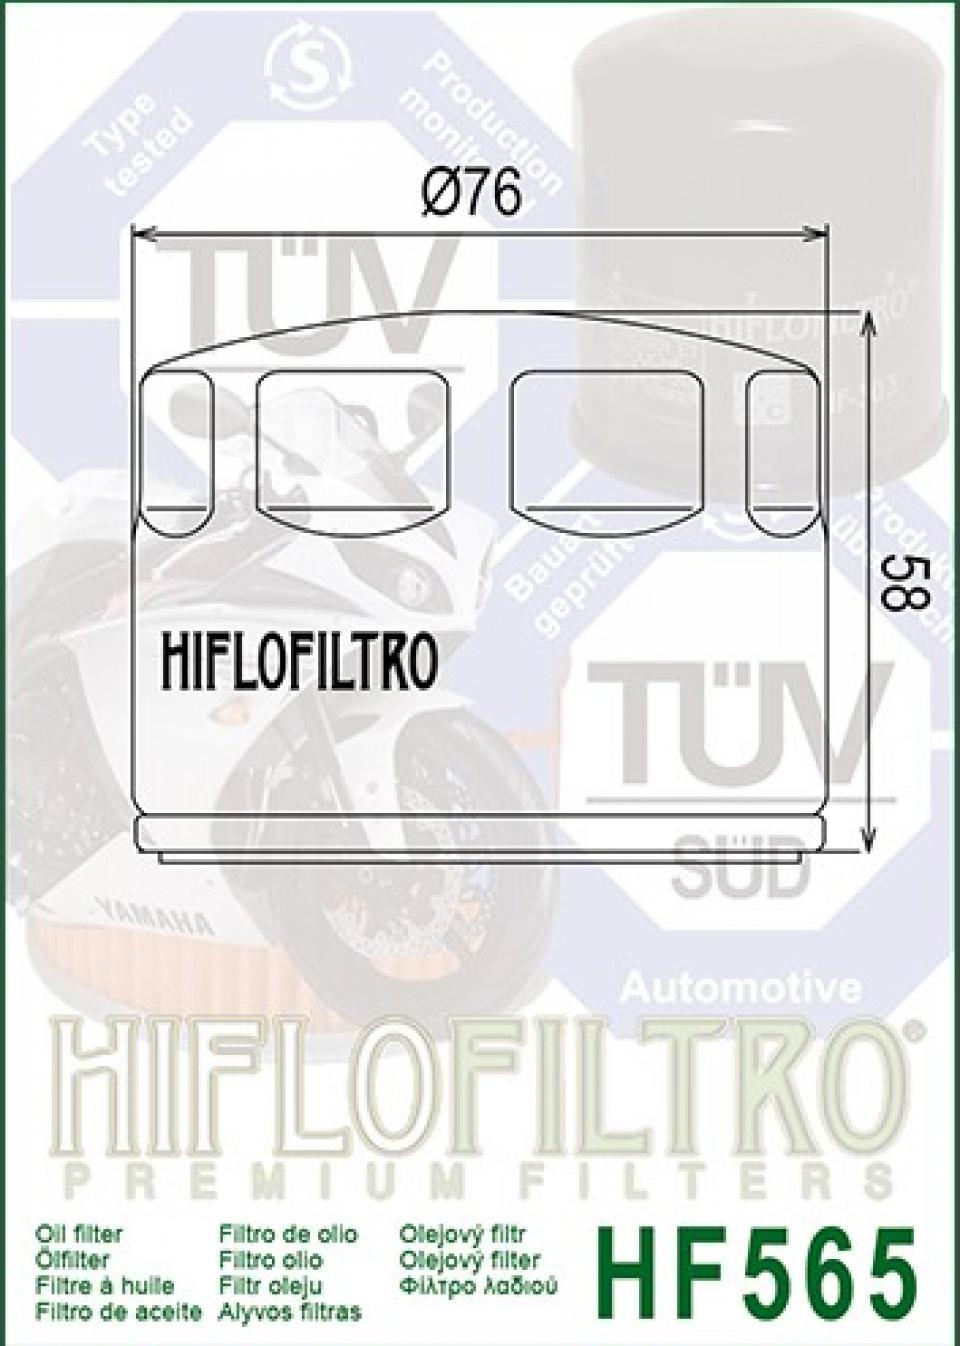 Filtre à huile Hiflo Filtro pour Moto Aprilia 750 Smv Dorsoduro Factory 2010-2013 Neuf